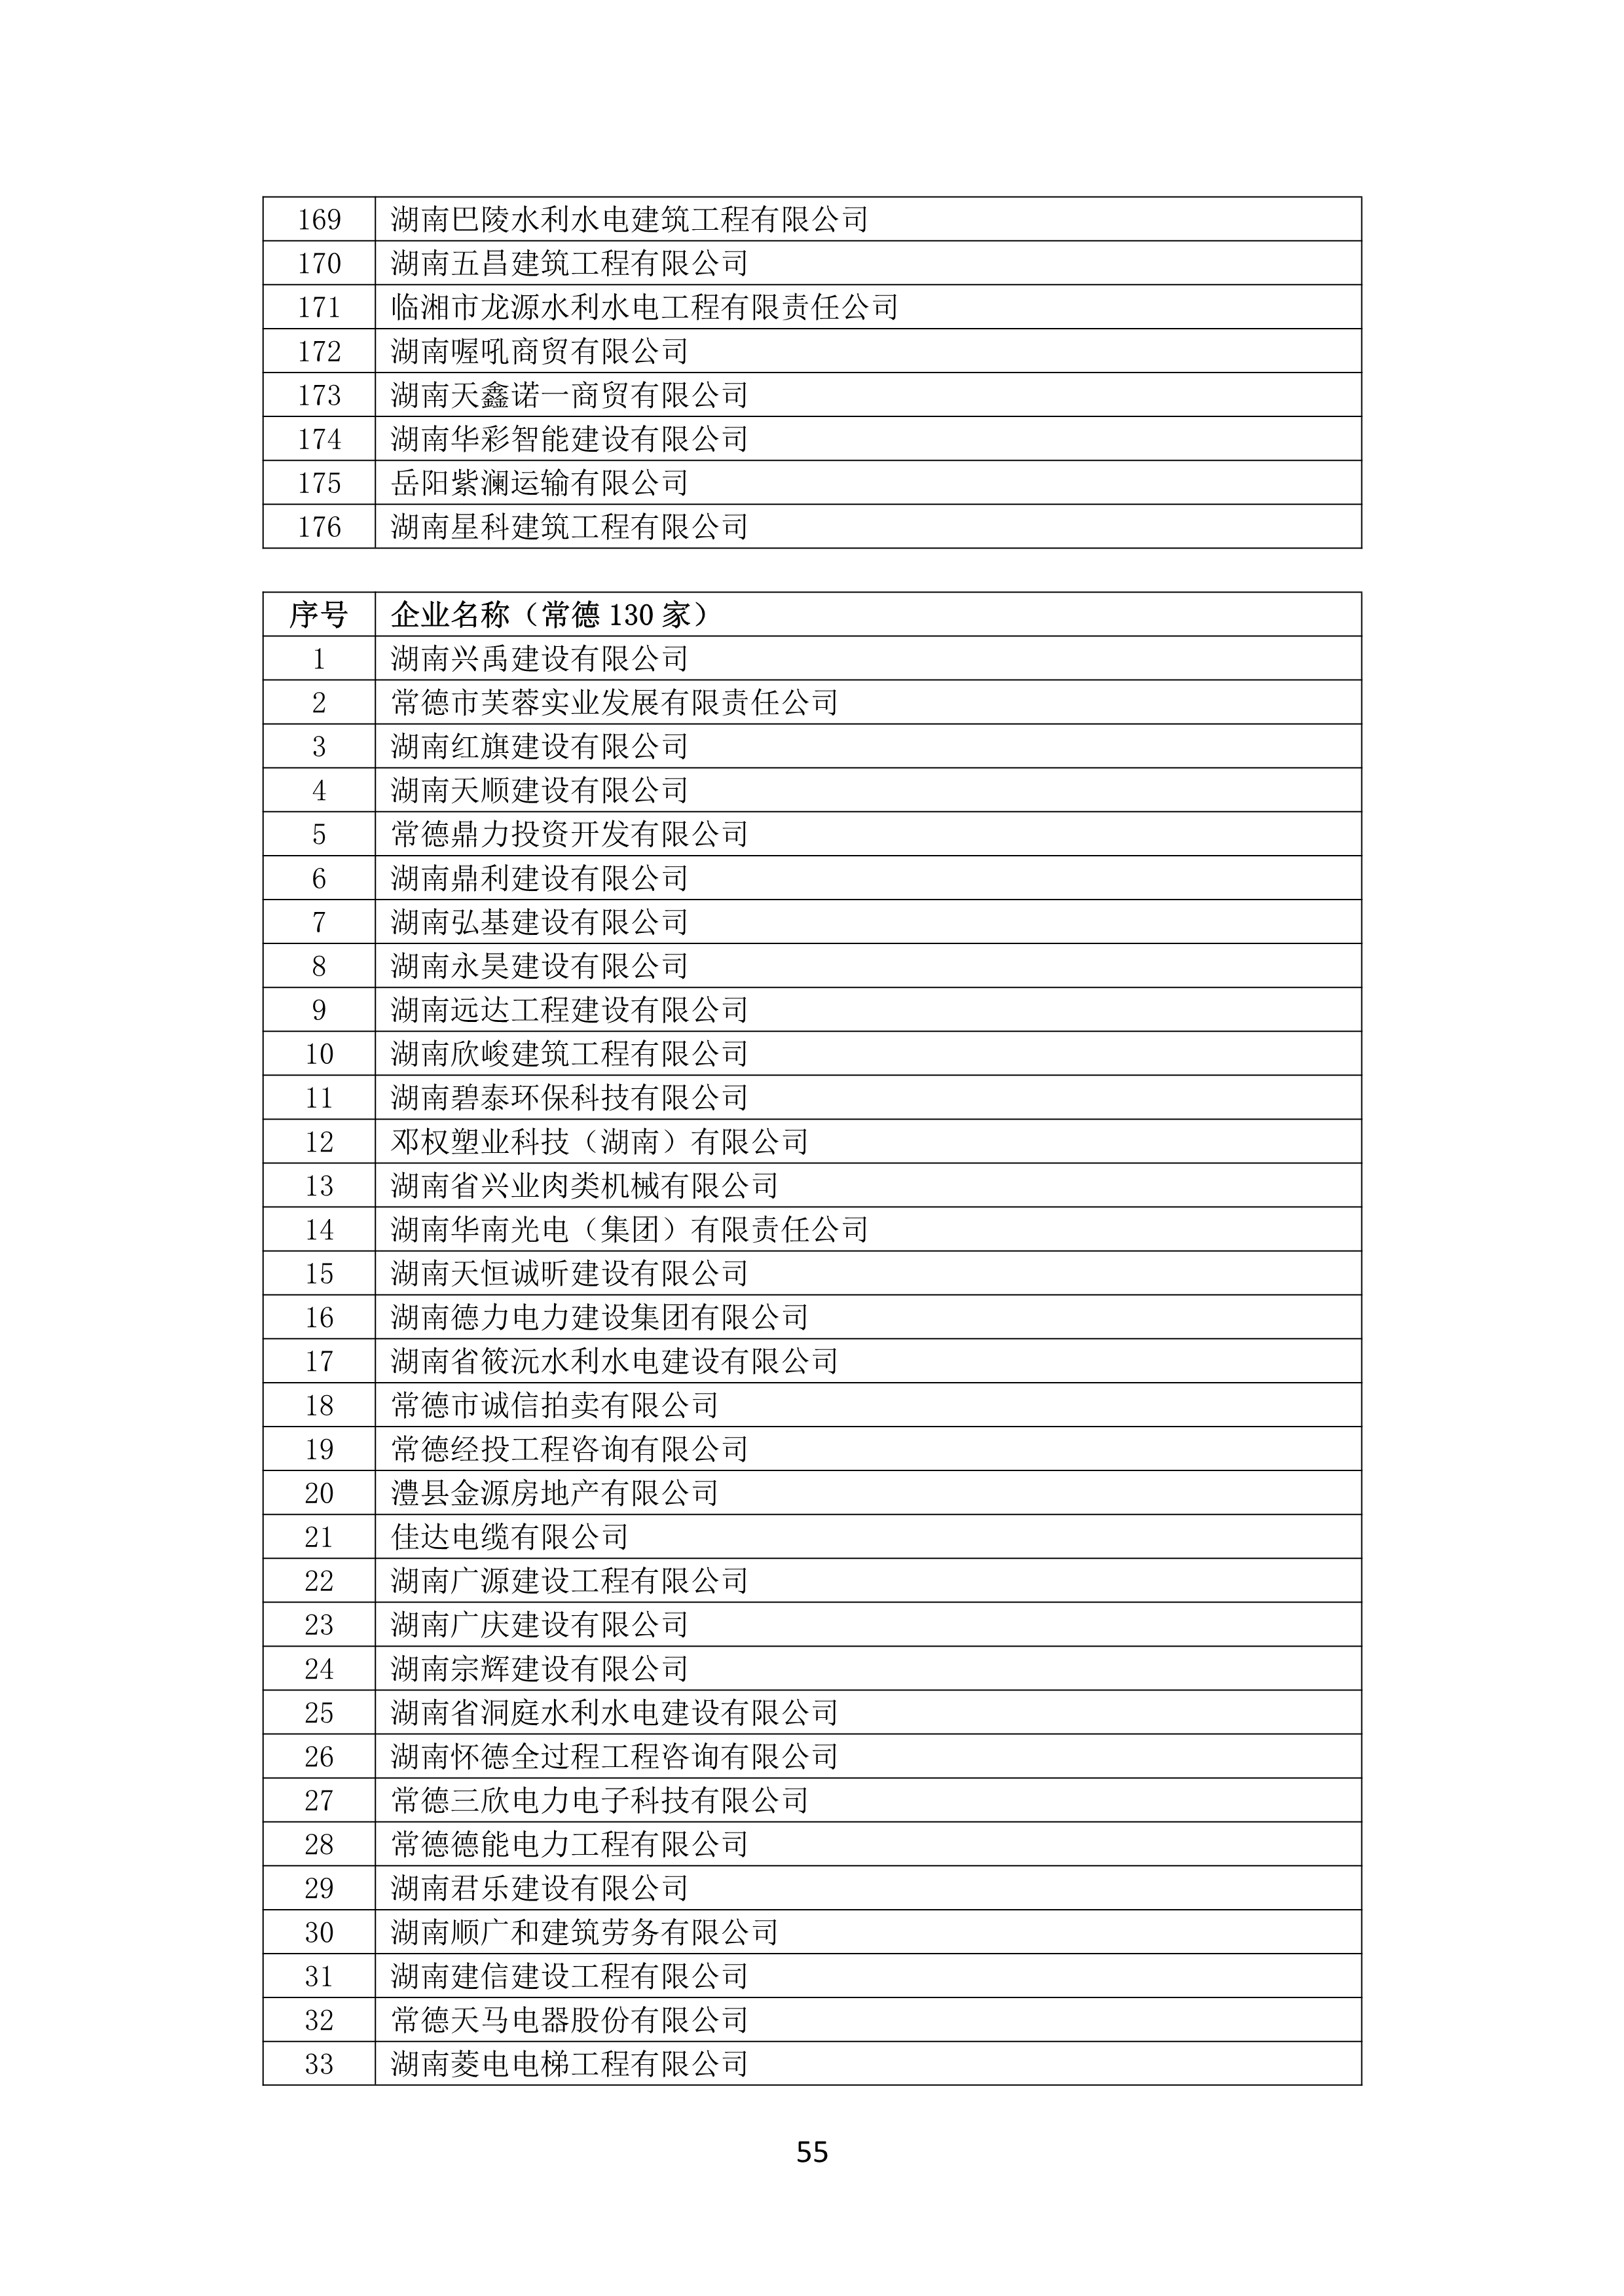 2021 年(nián)度湖南省守合同重信用企業名單_56.png